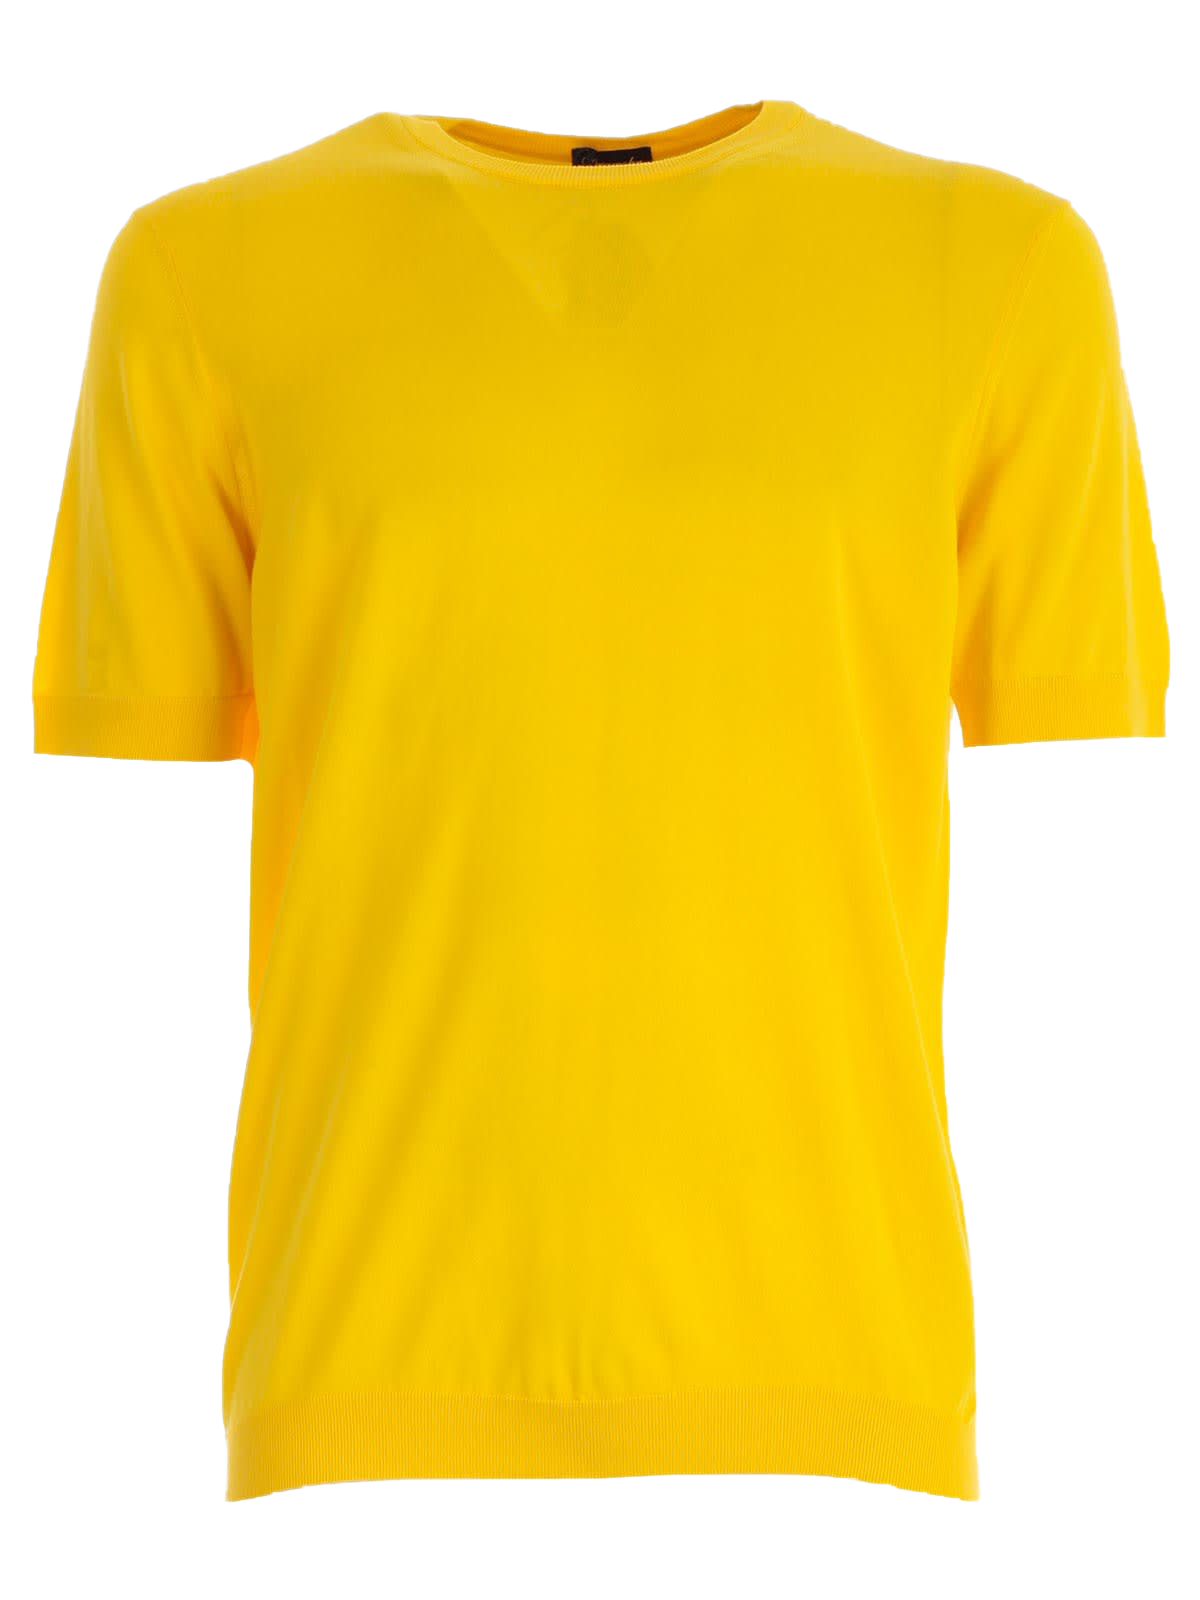 Camiseta amarilla llana PNG Imagen PNG